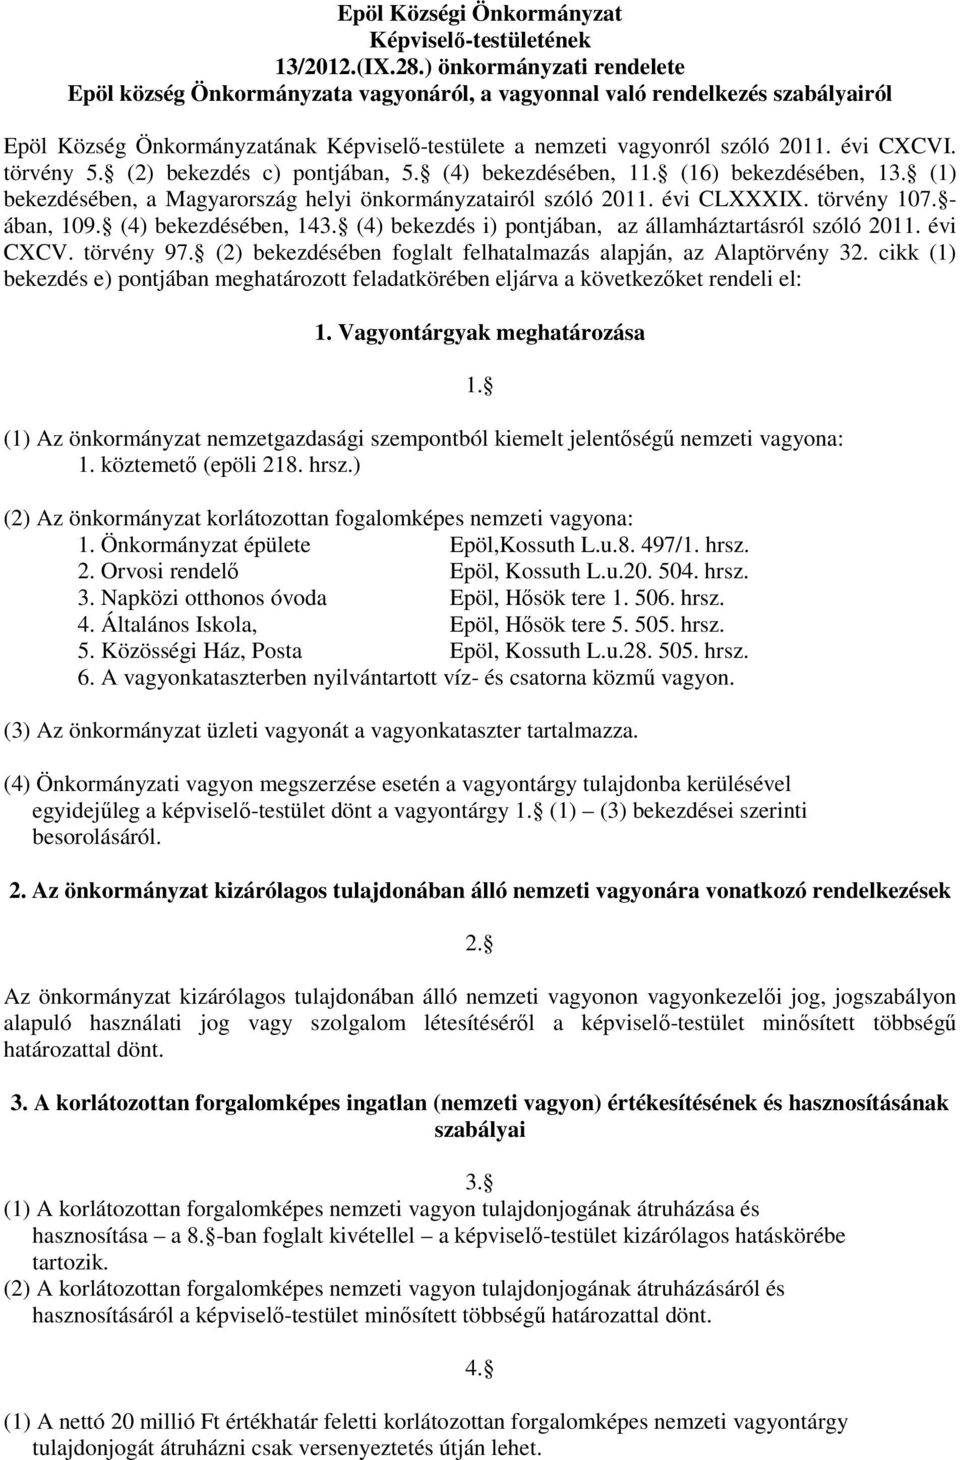 törvény 5. (2) bekezdés c) pontjában, 5. (4) bekezdésében, 11. (16) bekezdésében, 13. (1) bekezdésében, a Magyarország helyi önkormányzatairól szóló 2011. évi CLXXXIX. törvény 107. - ában, 109.